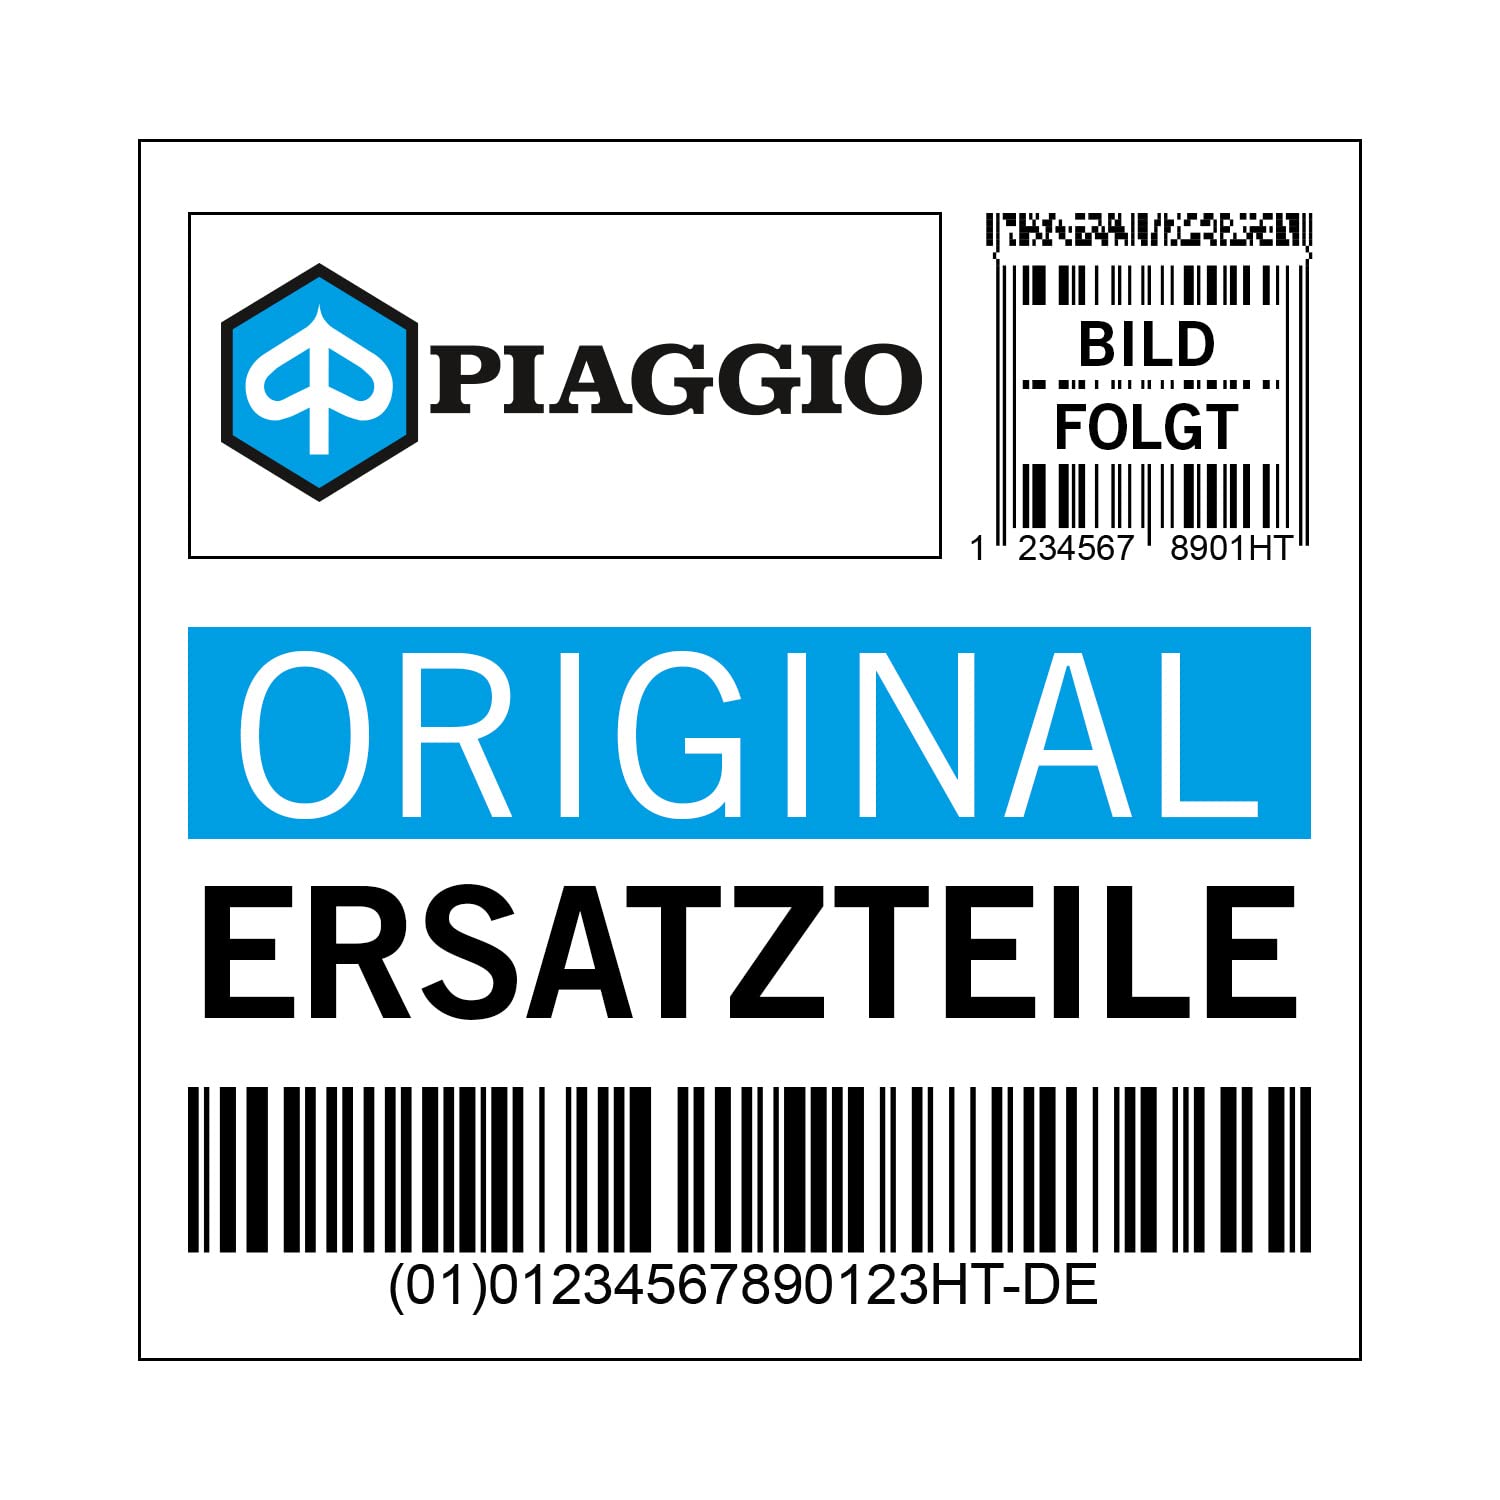 Bremsscheibe Piaggio, Schlingerschutz, 601359 von Maxtuned